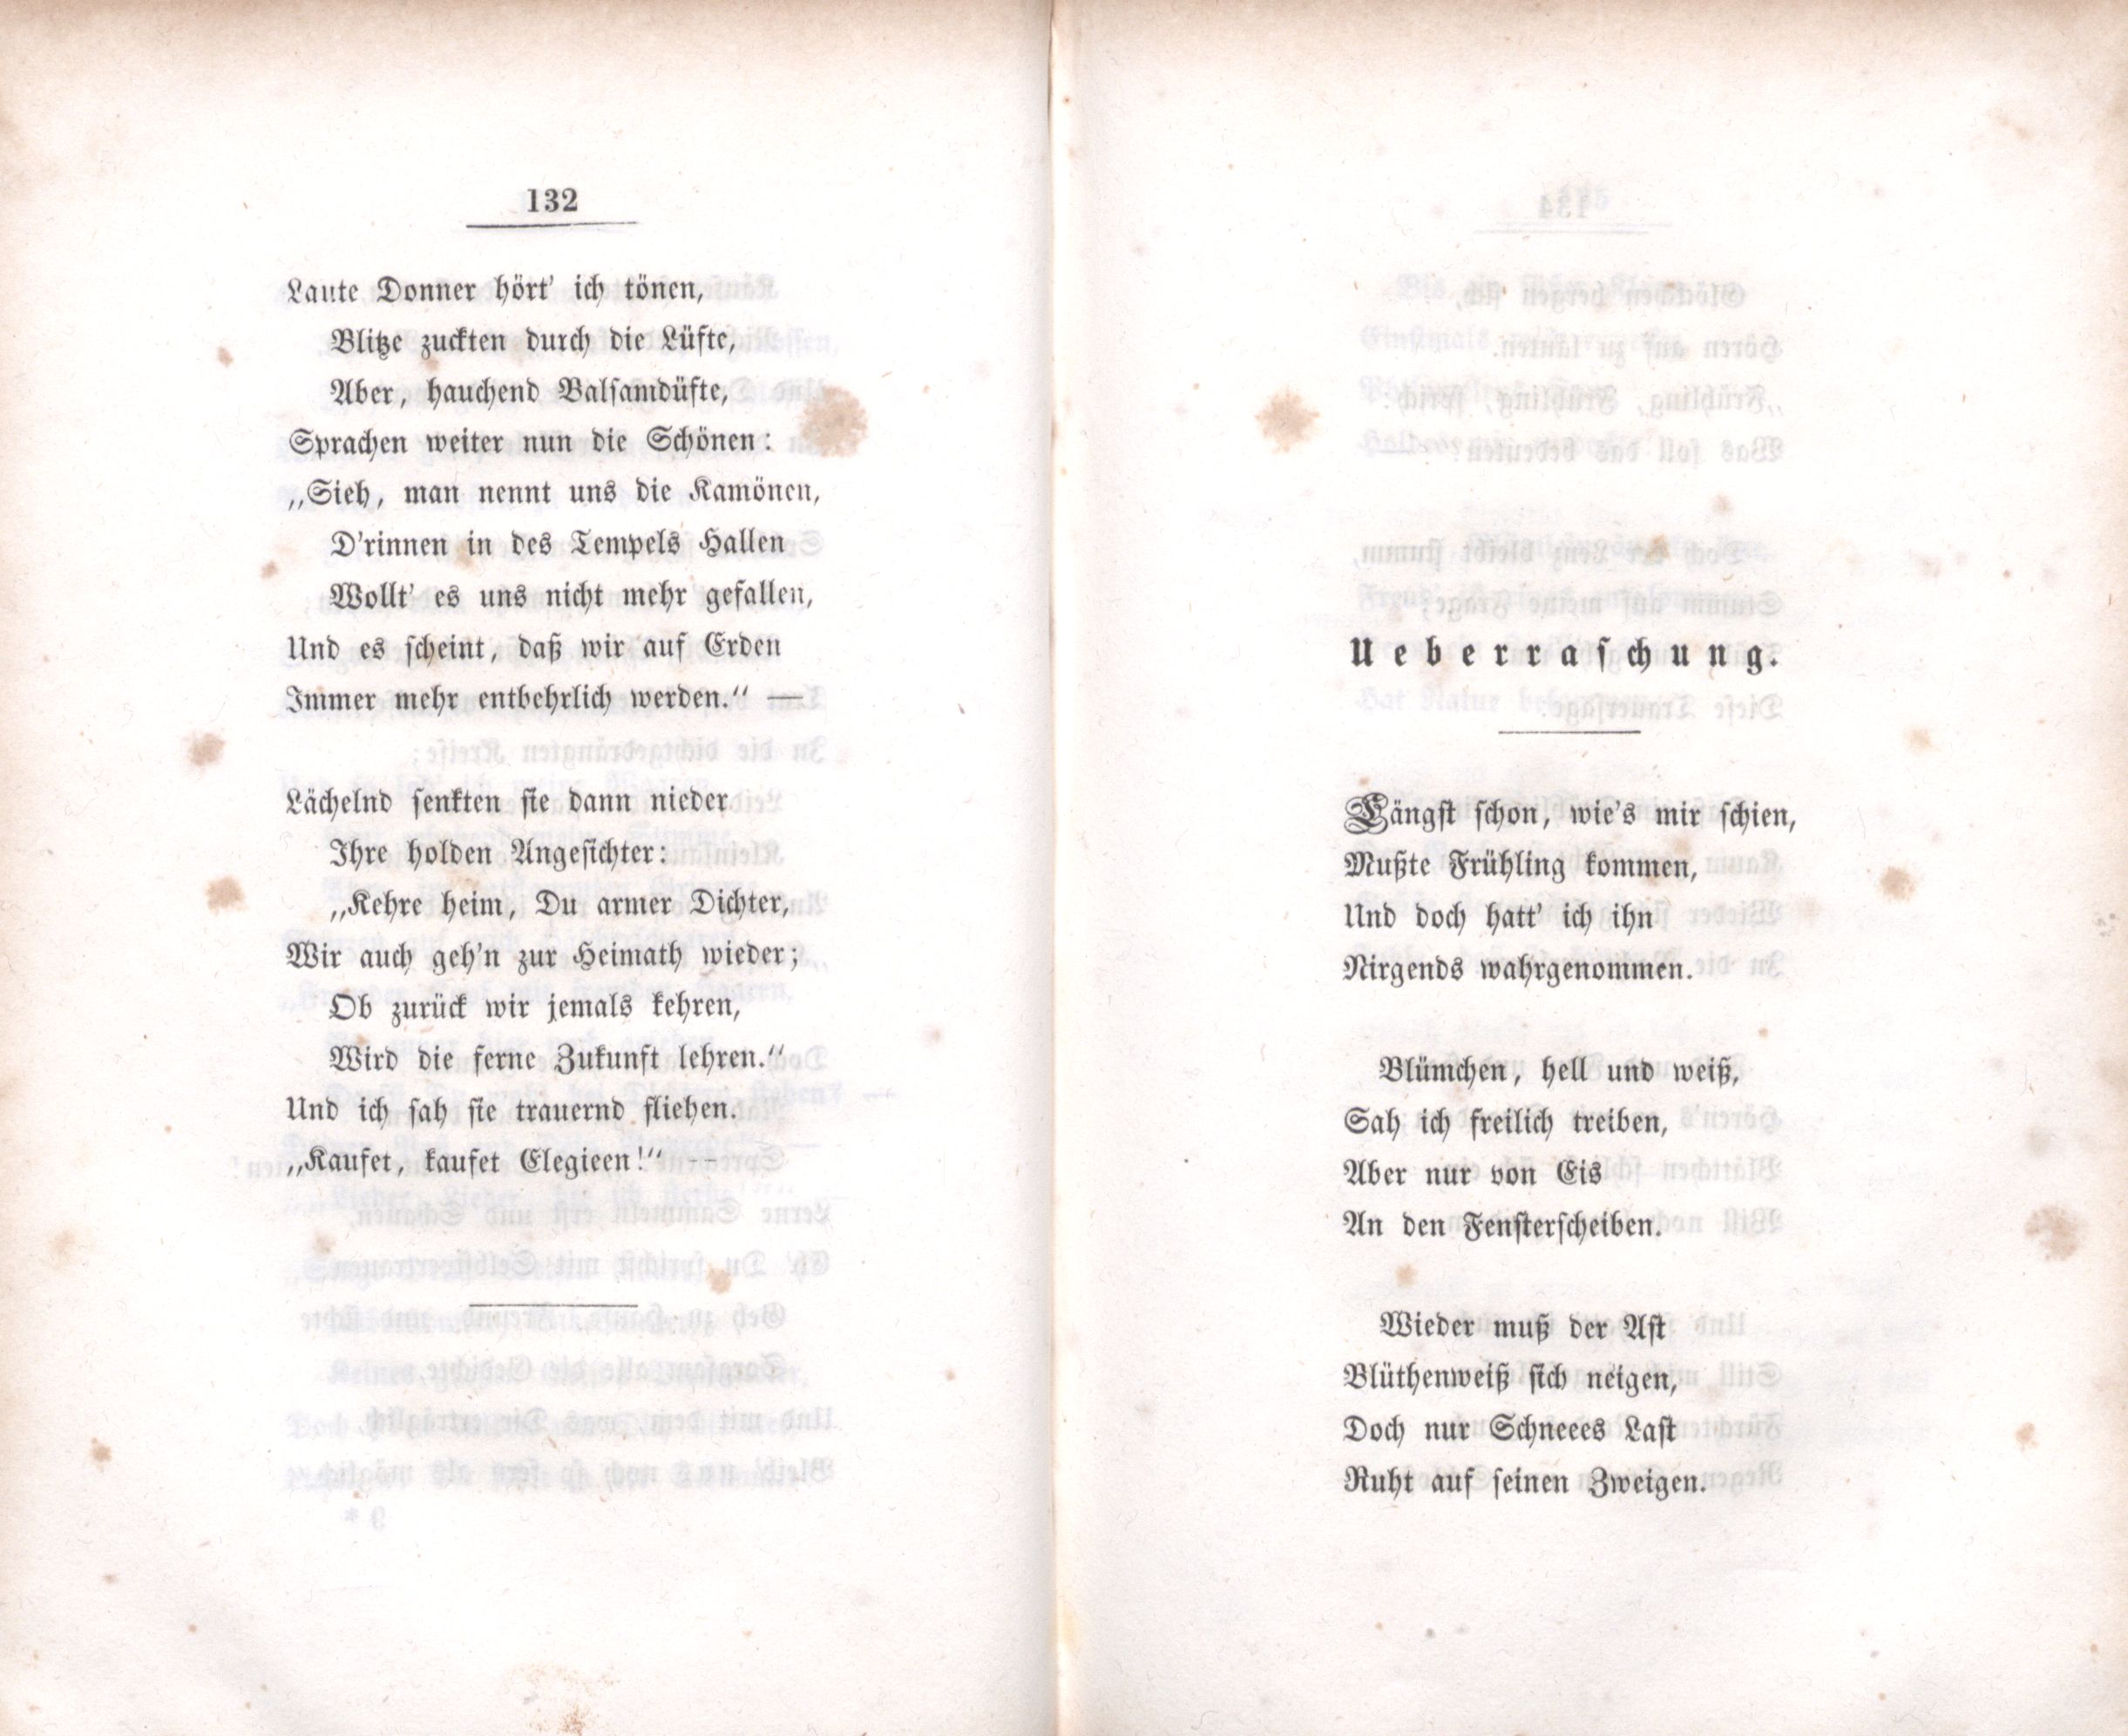 Ueberraschung (1848) | 1. (132-133) Основной текст